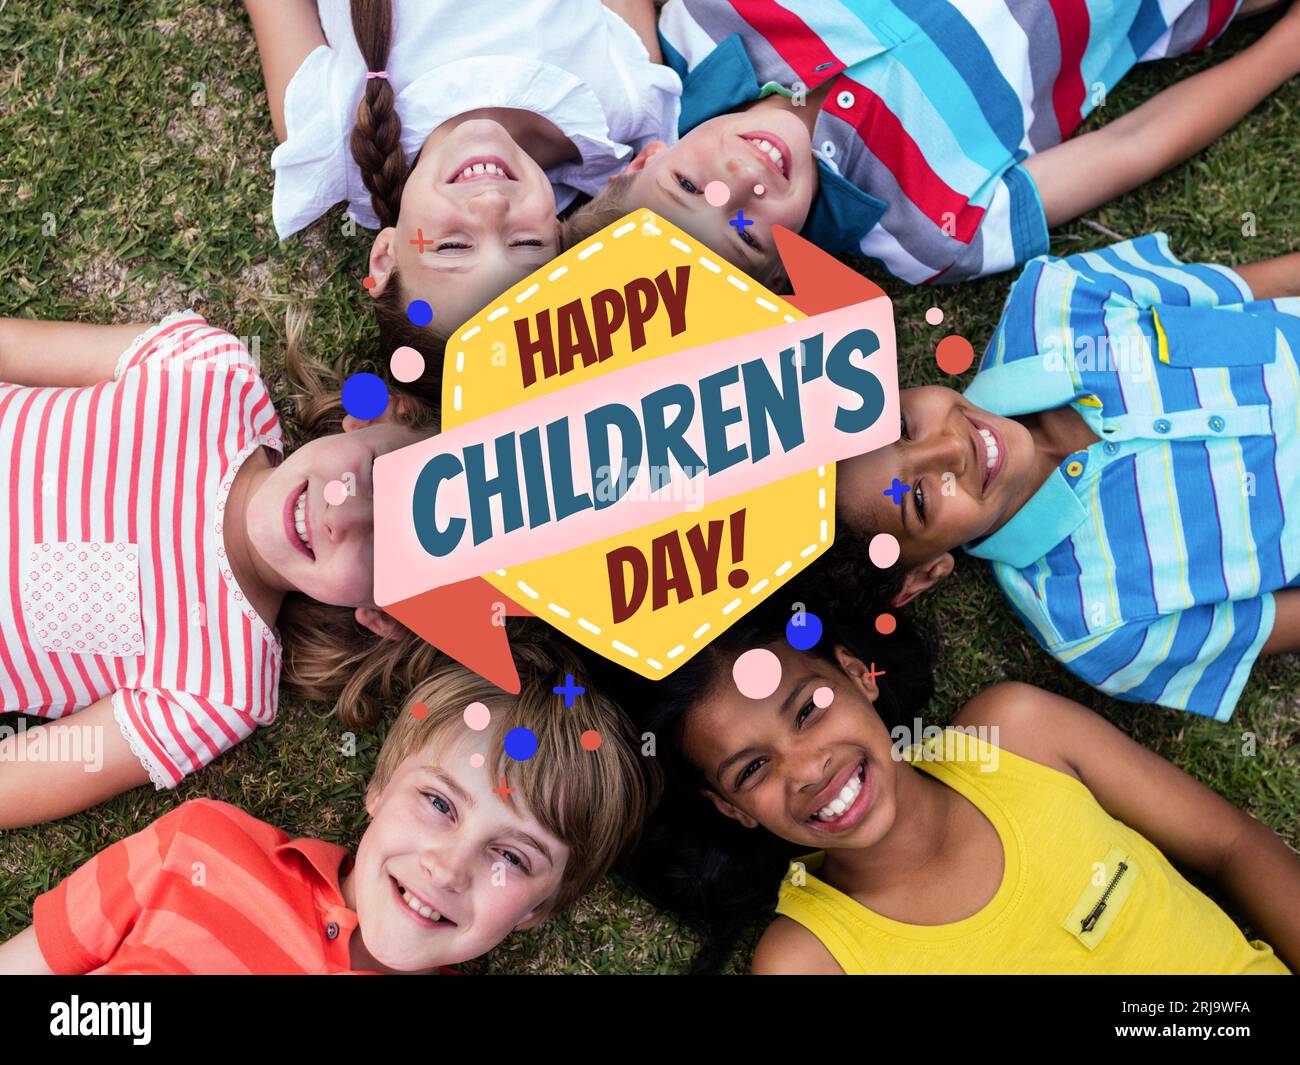 Composition du texte heureux de la journée des enfants et divers enfants souriants couchés sur l'herbe Banque D'Images